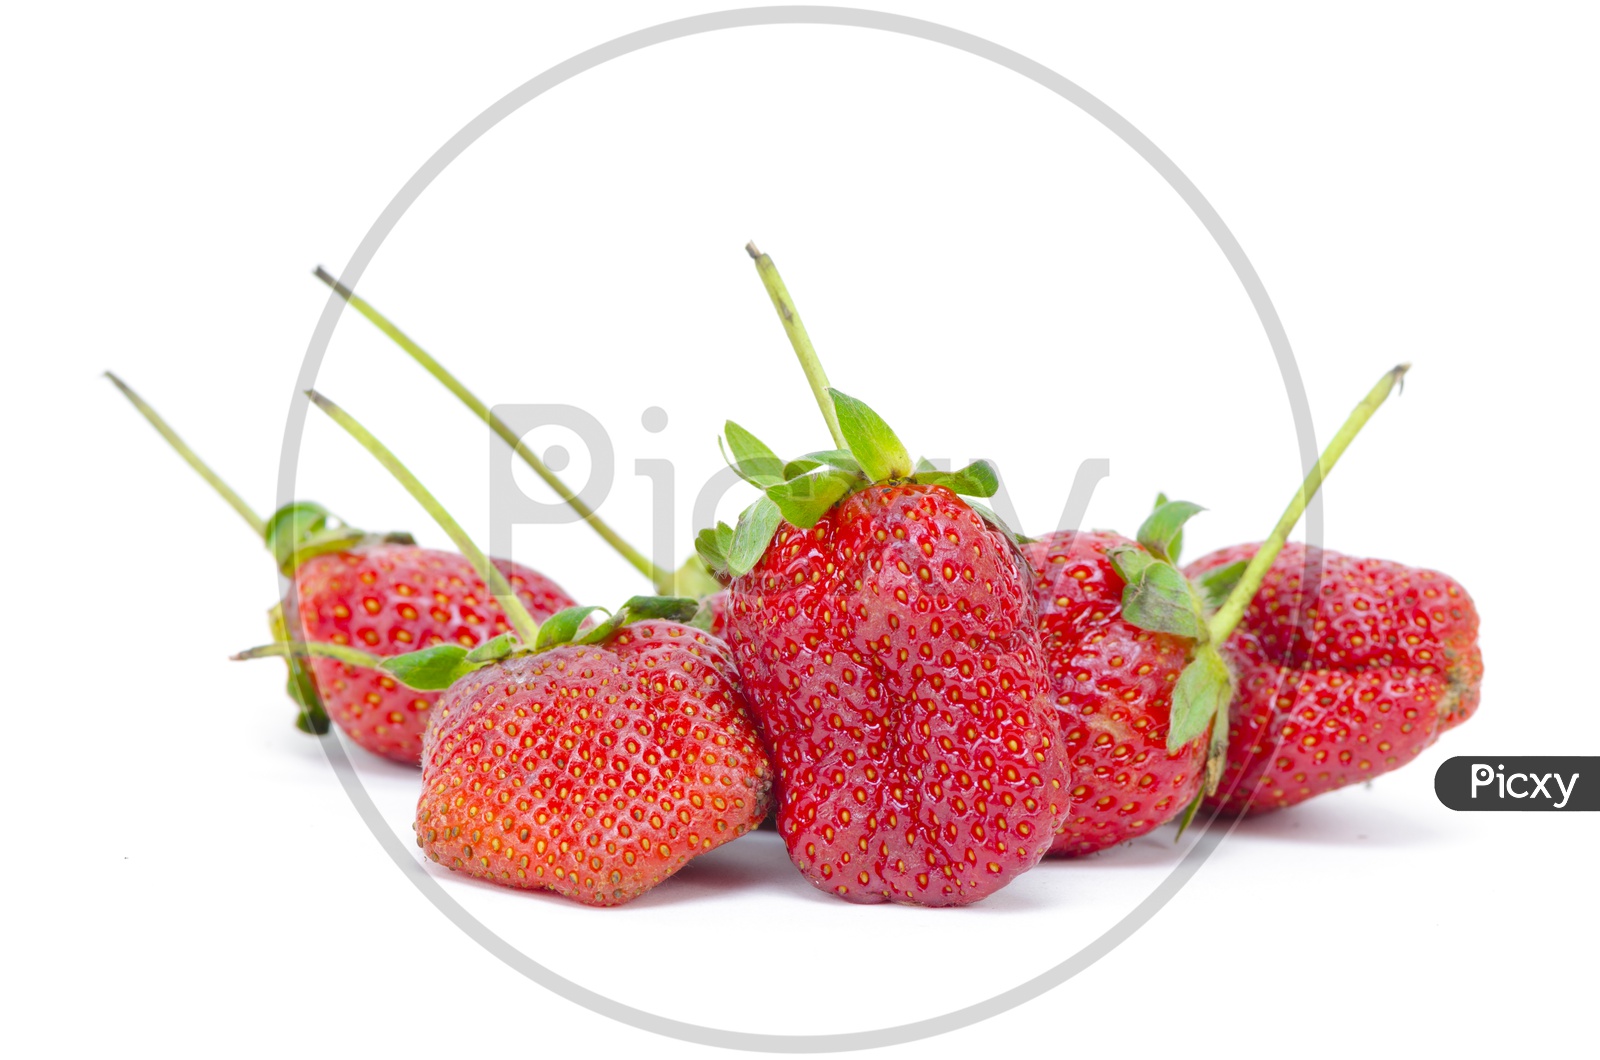 fresh strawberry isolated on white background